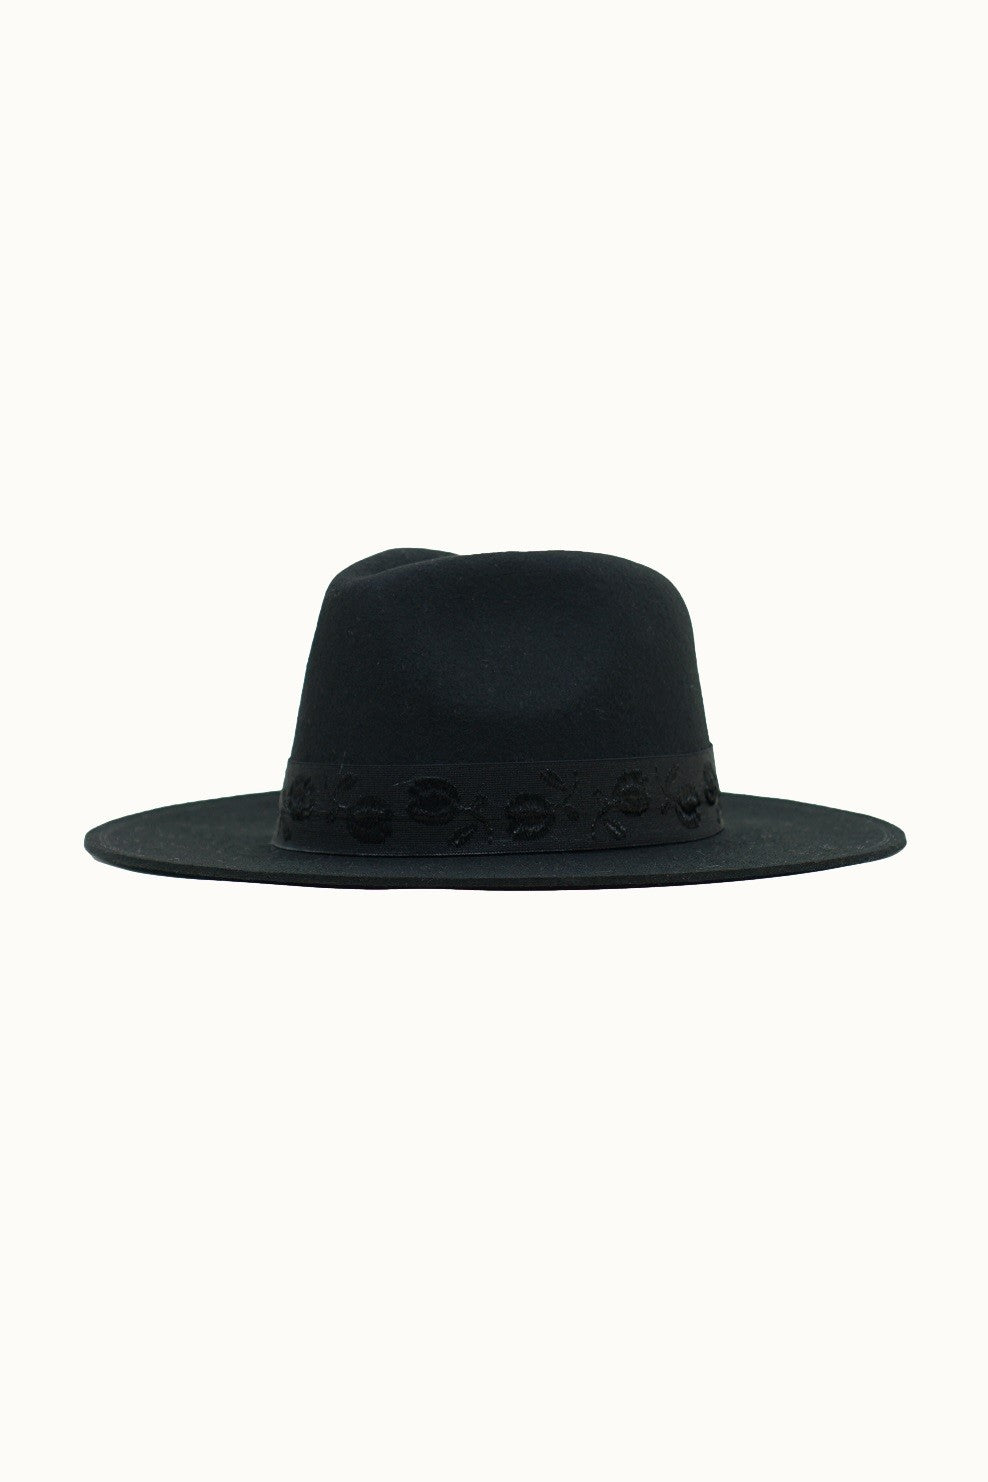 Zoey Black Wool Felt Hat